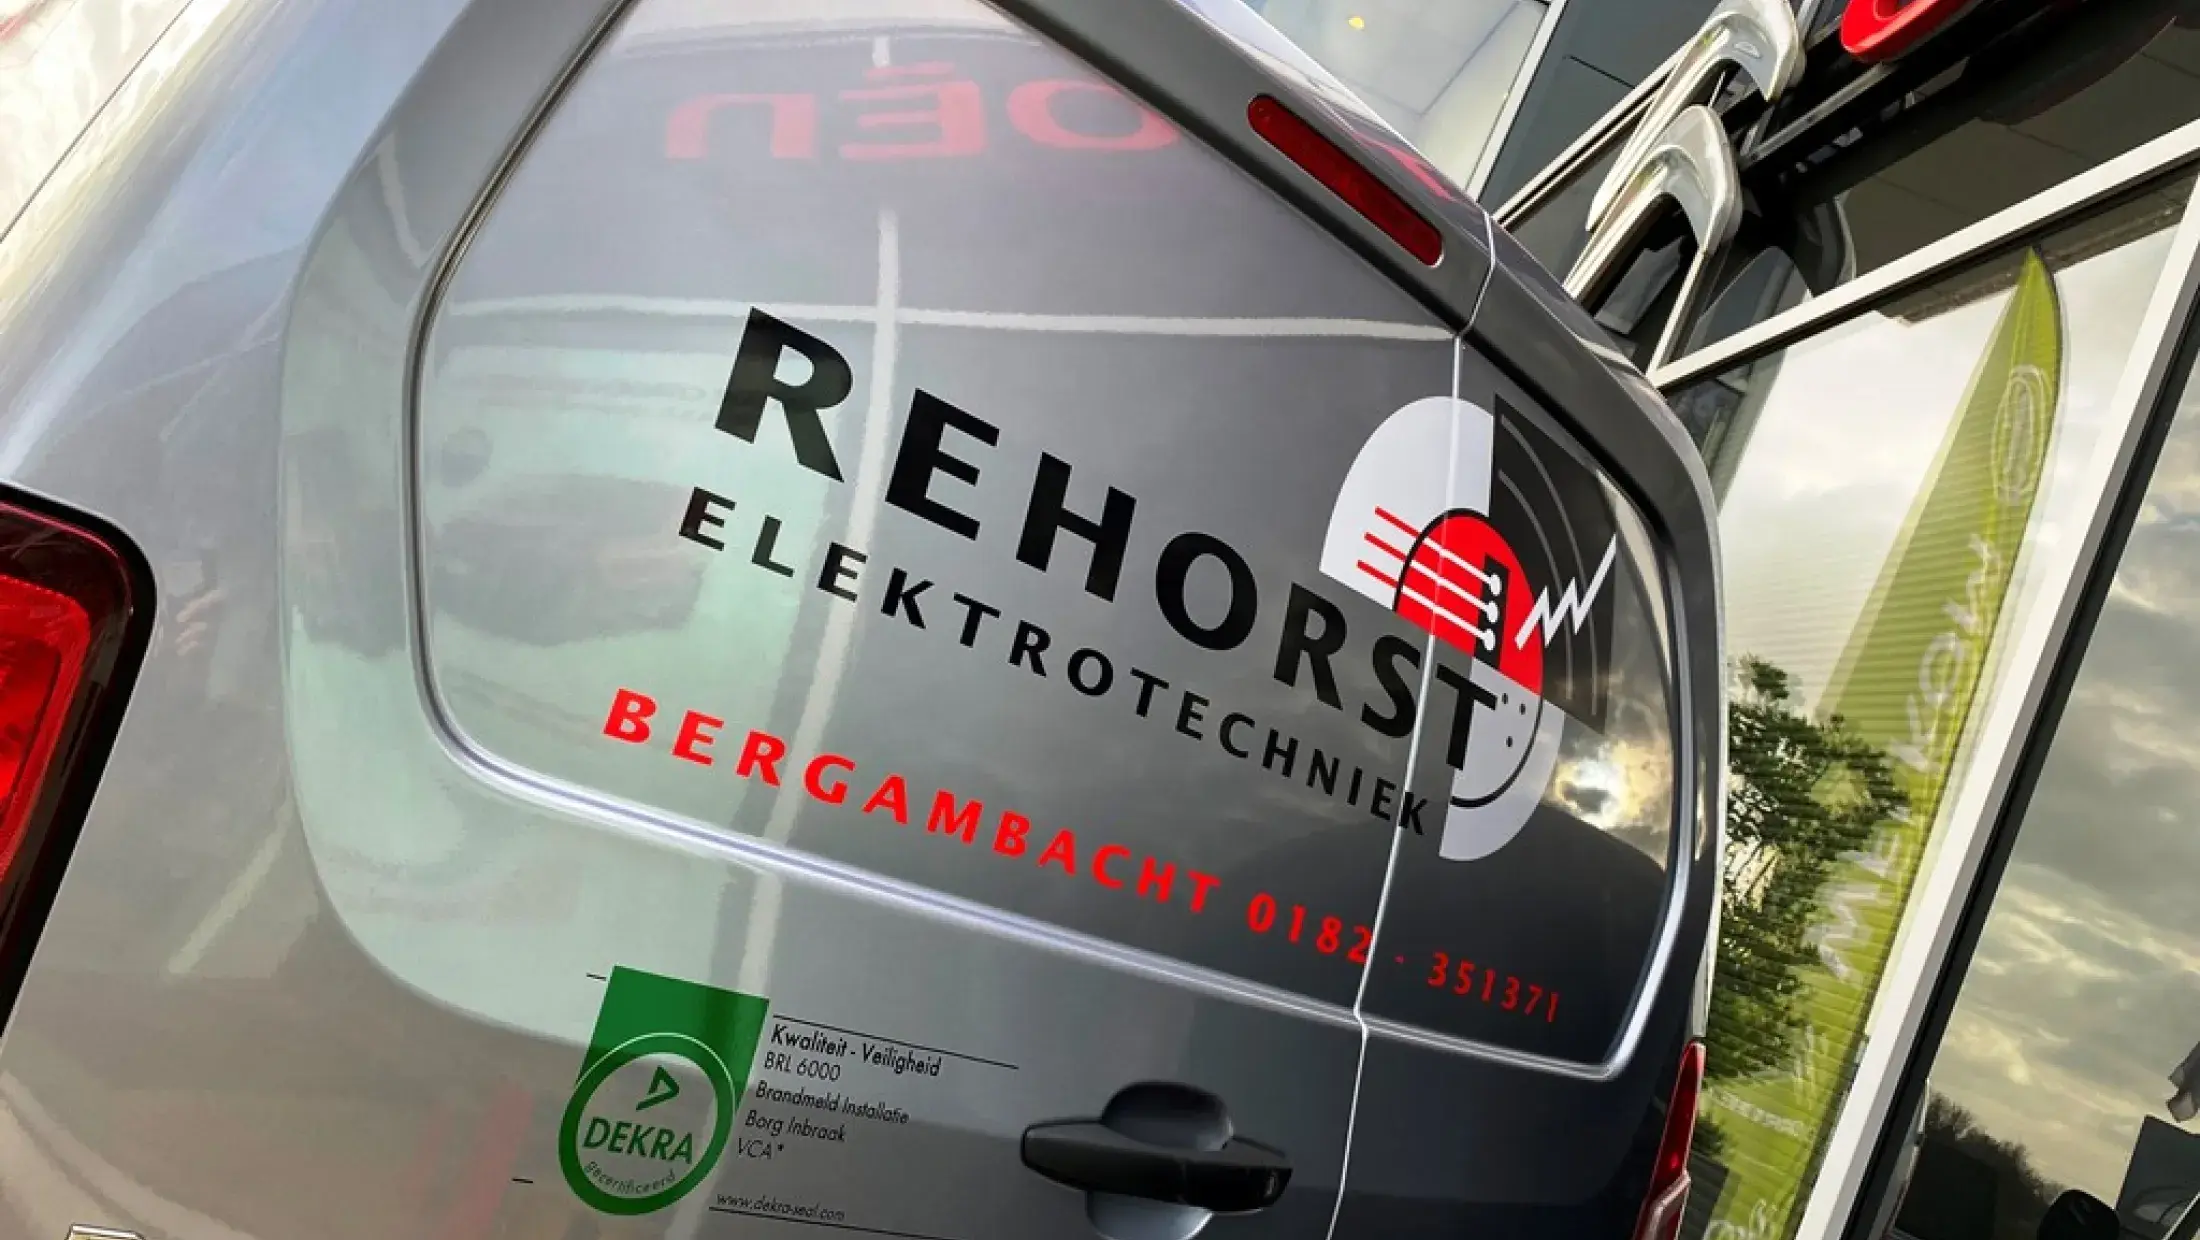 Berlingo VAN Rehorst Electrotechniek